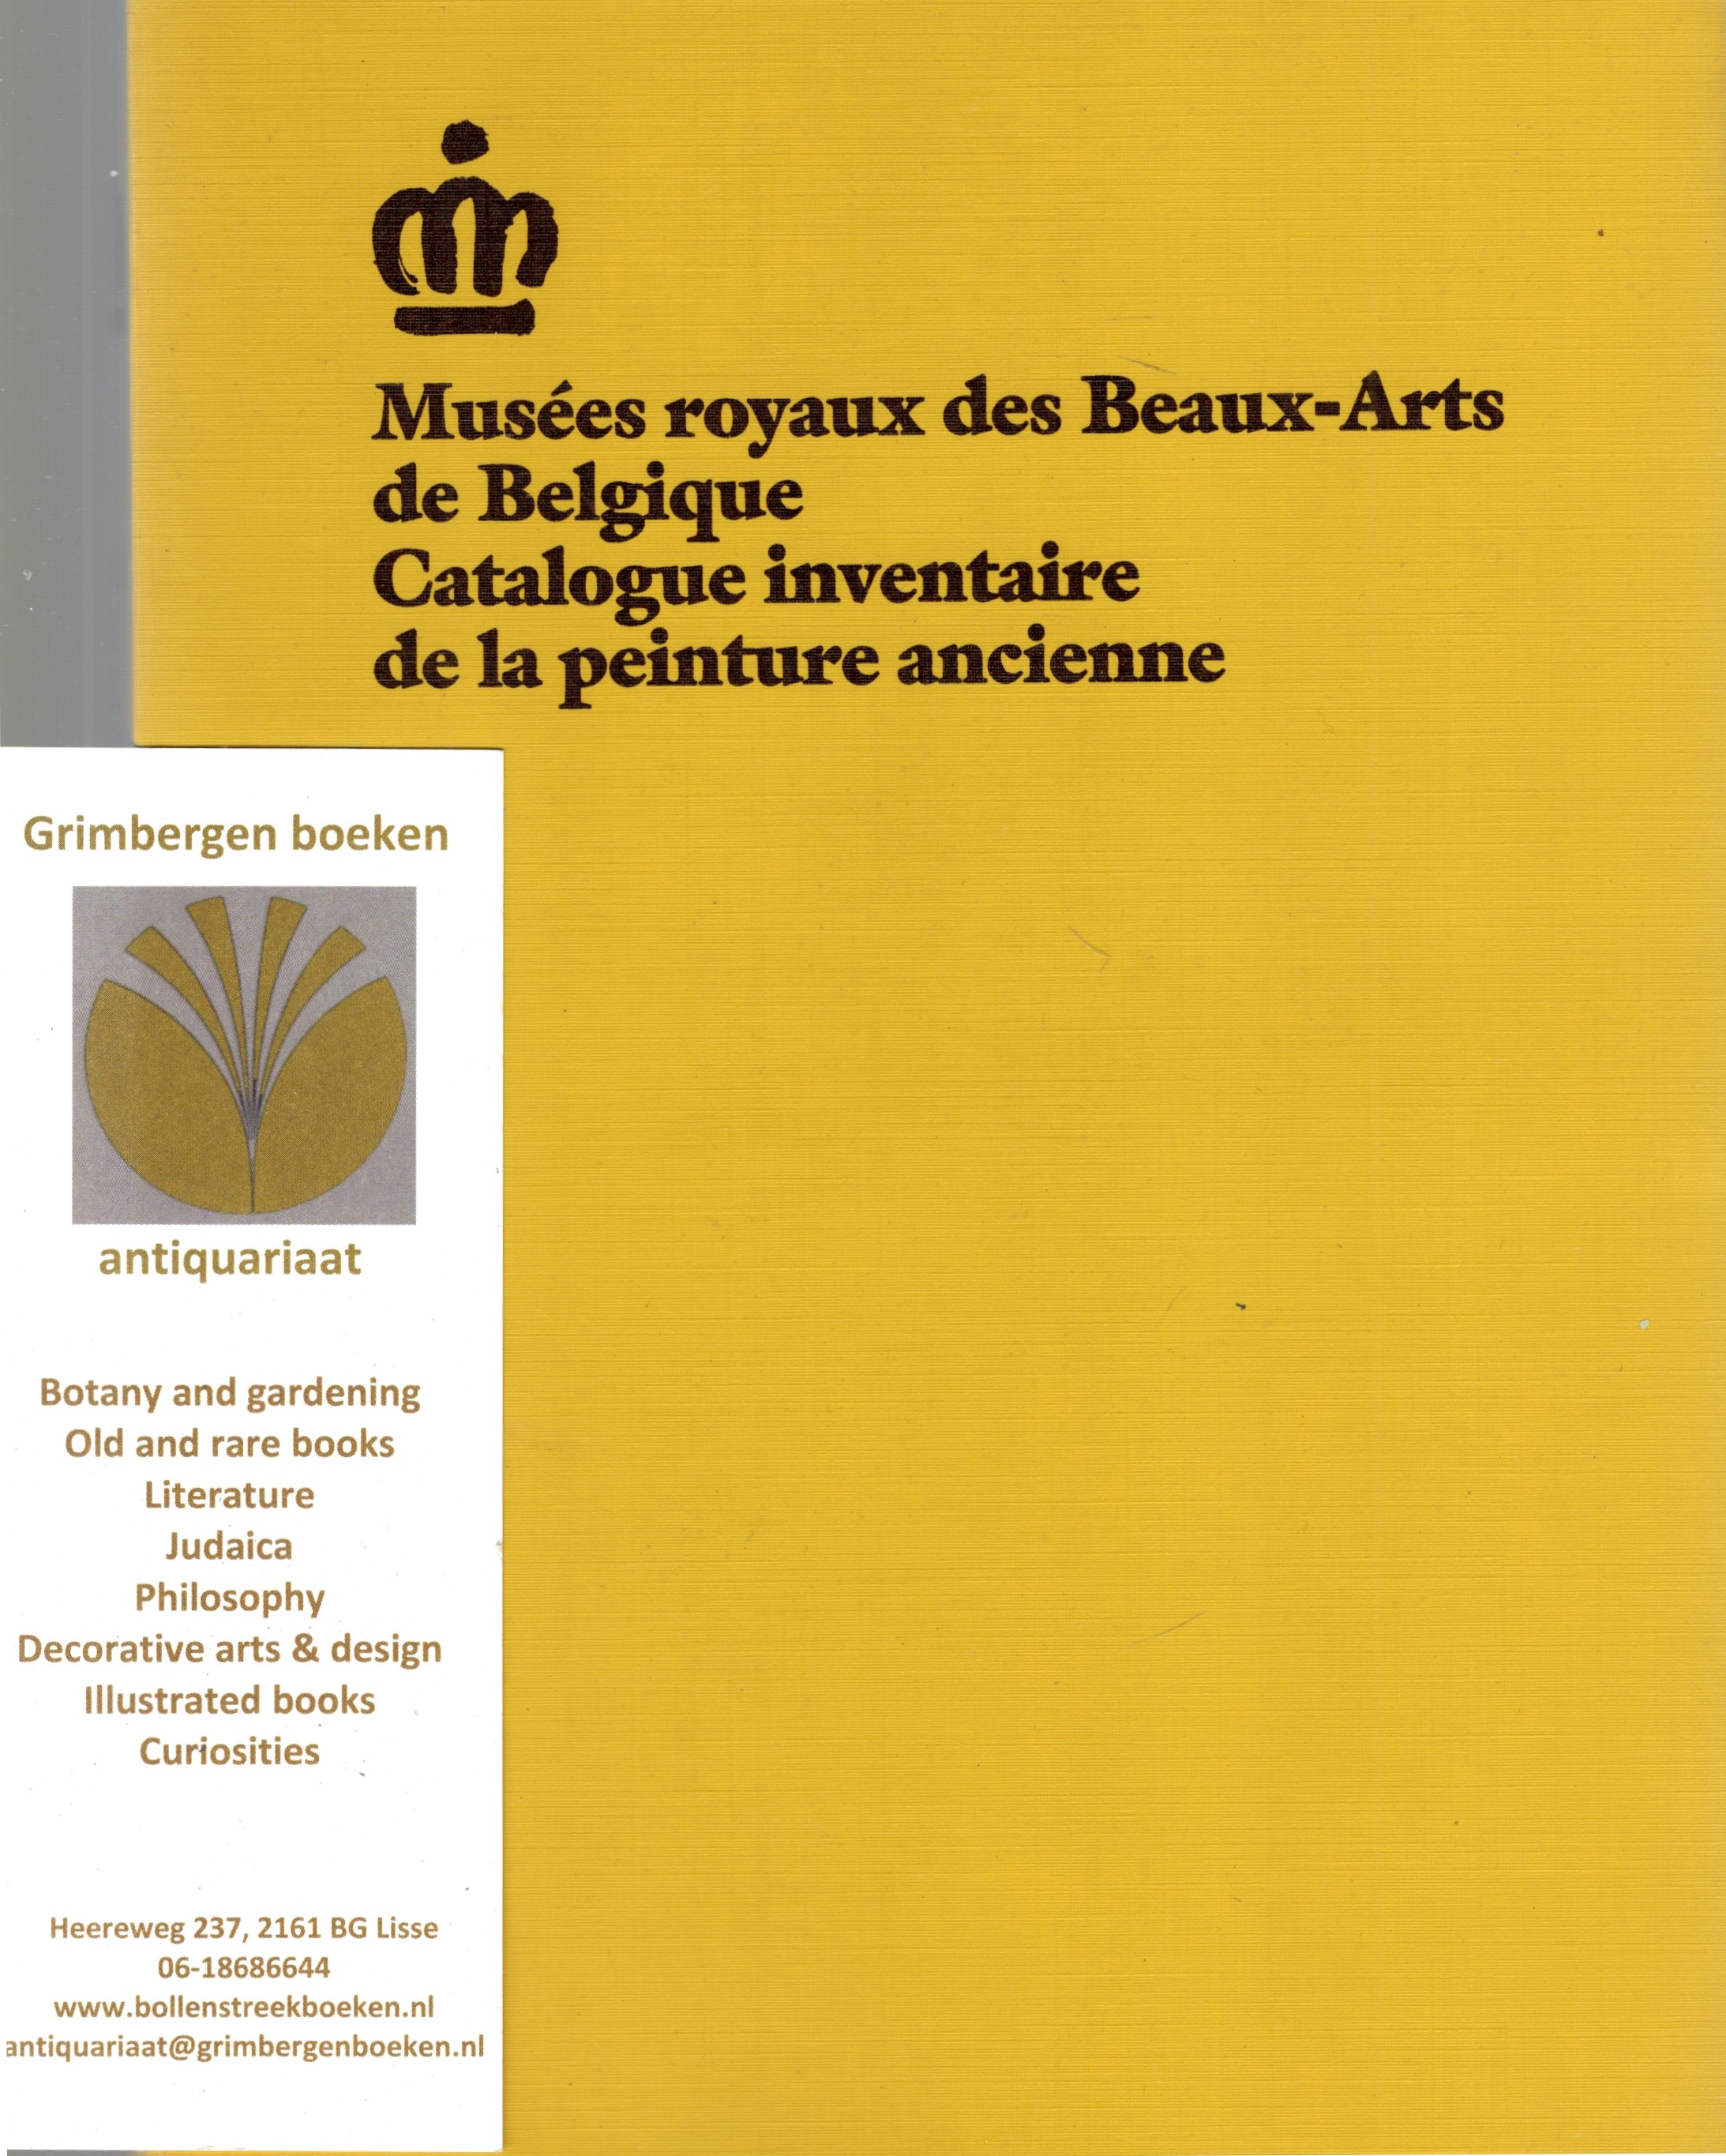  - Muses royaux des Beaux-Arts de Belgique: Catalogue inventaire de la peinture ancien 